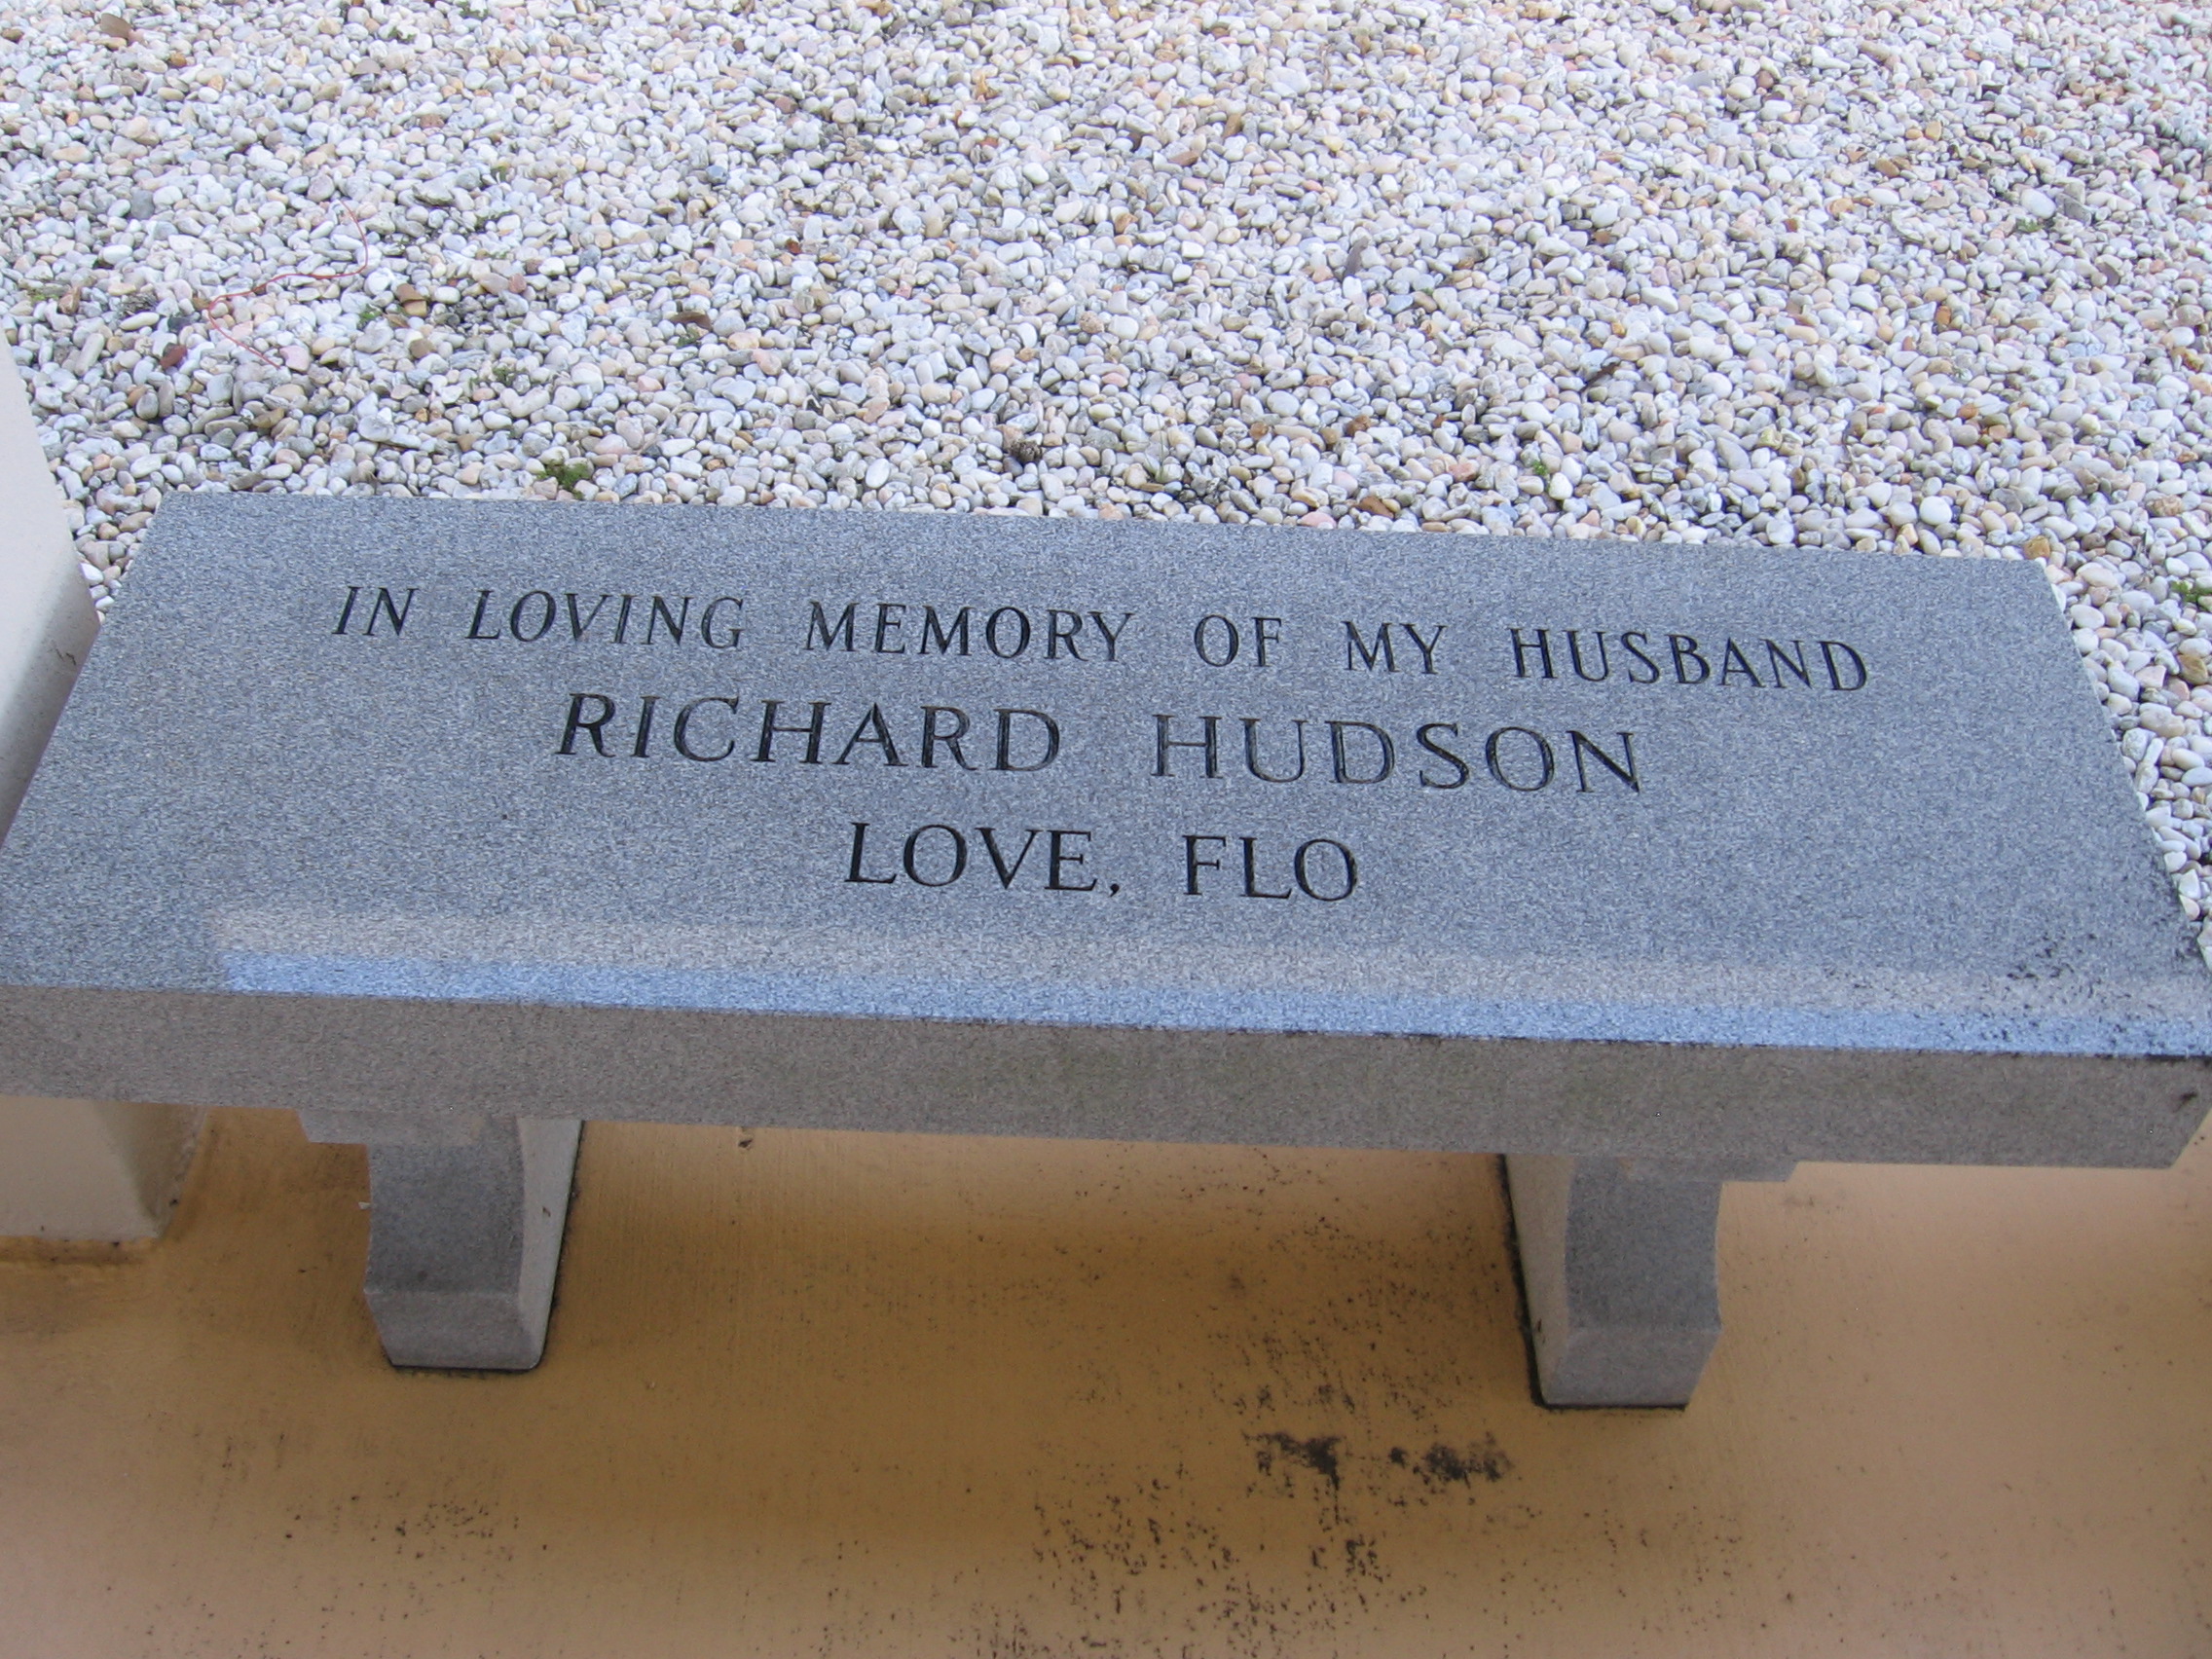 Richard Hudson